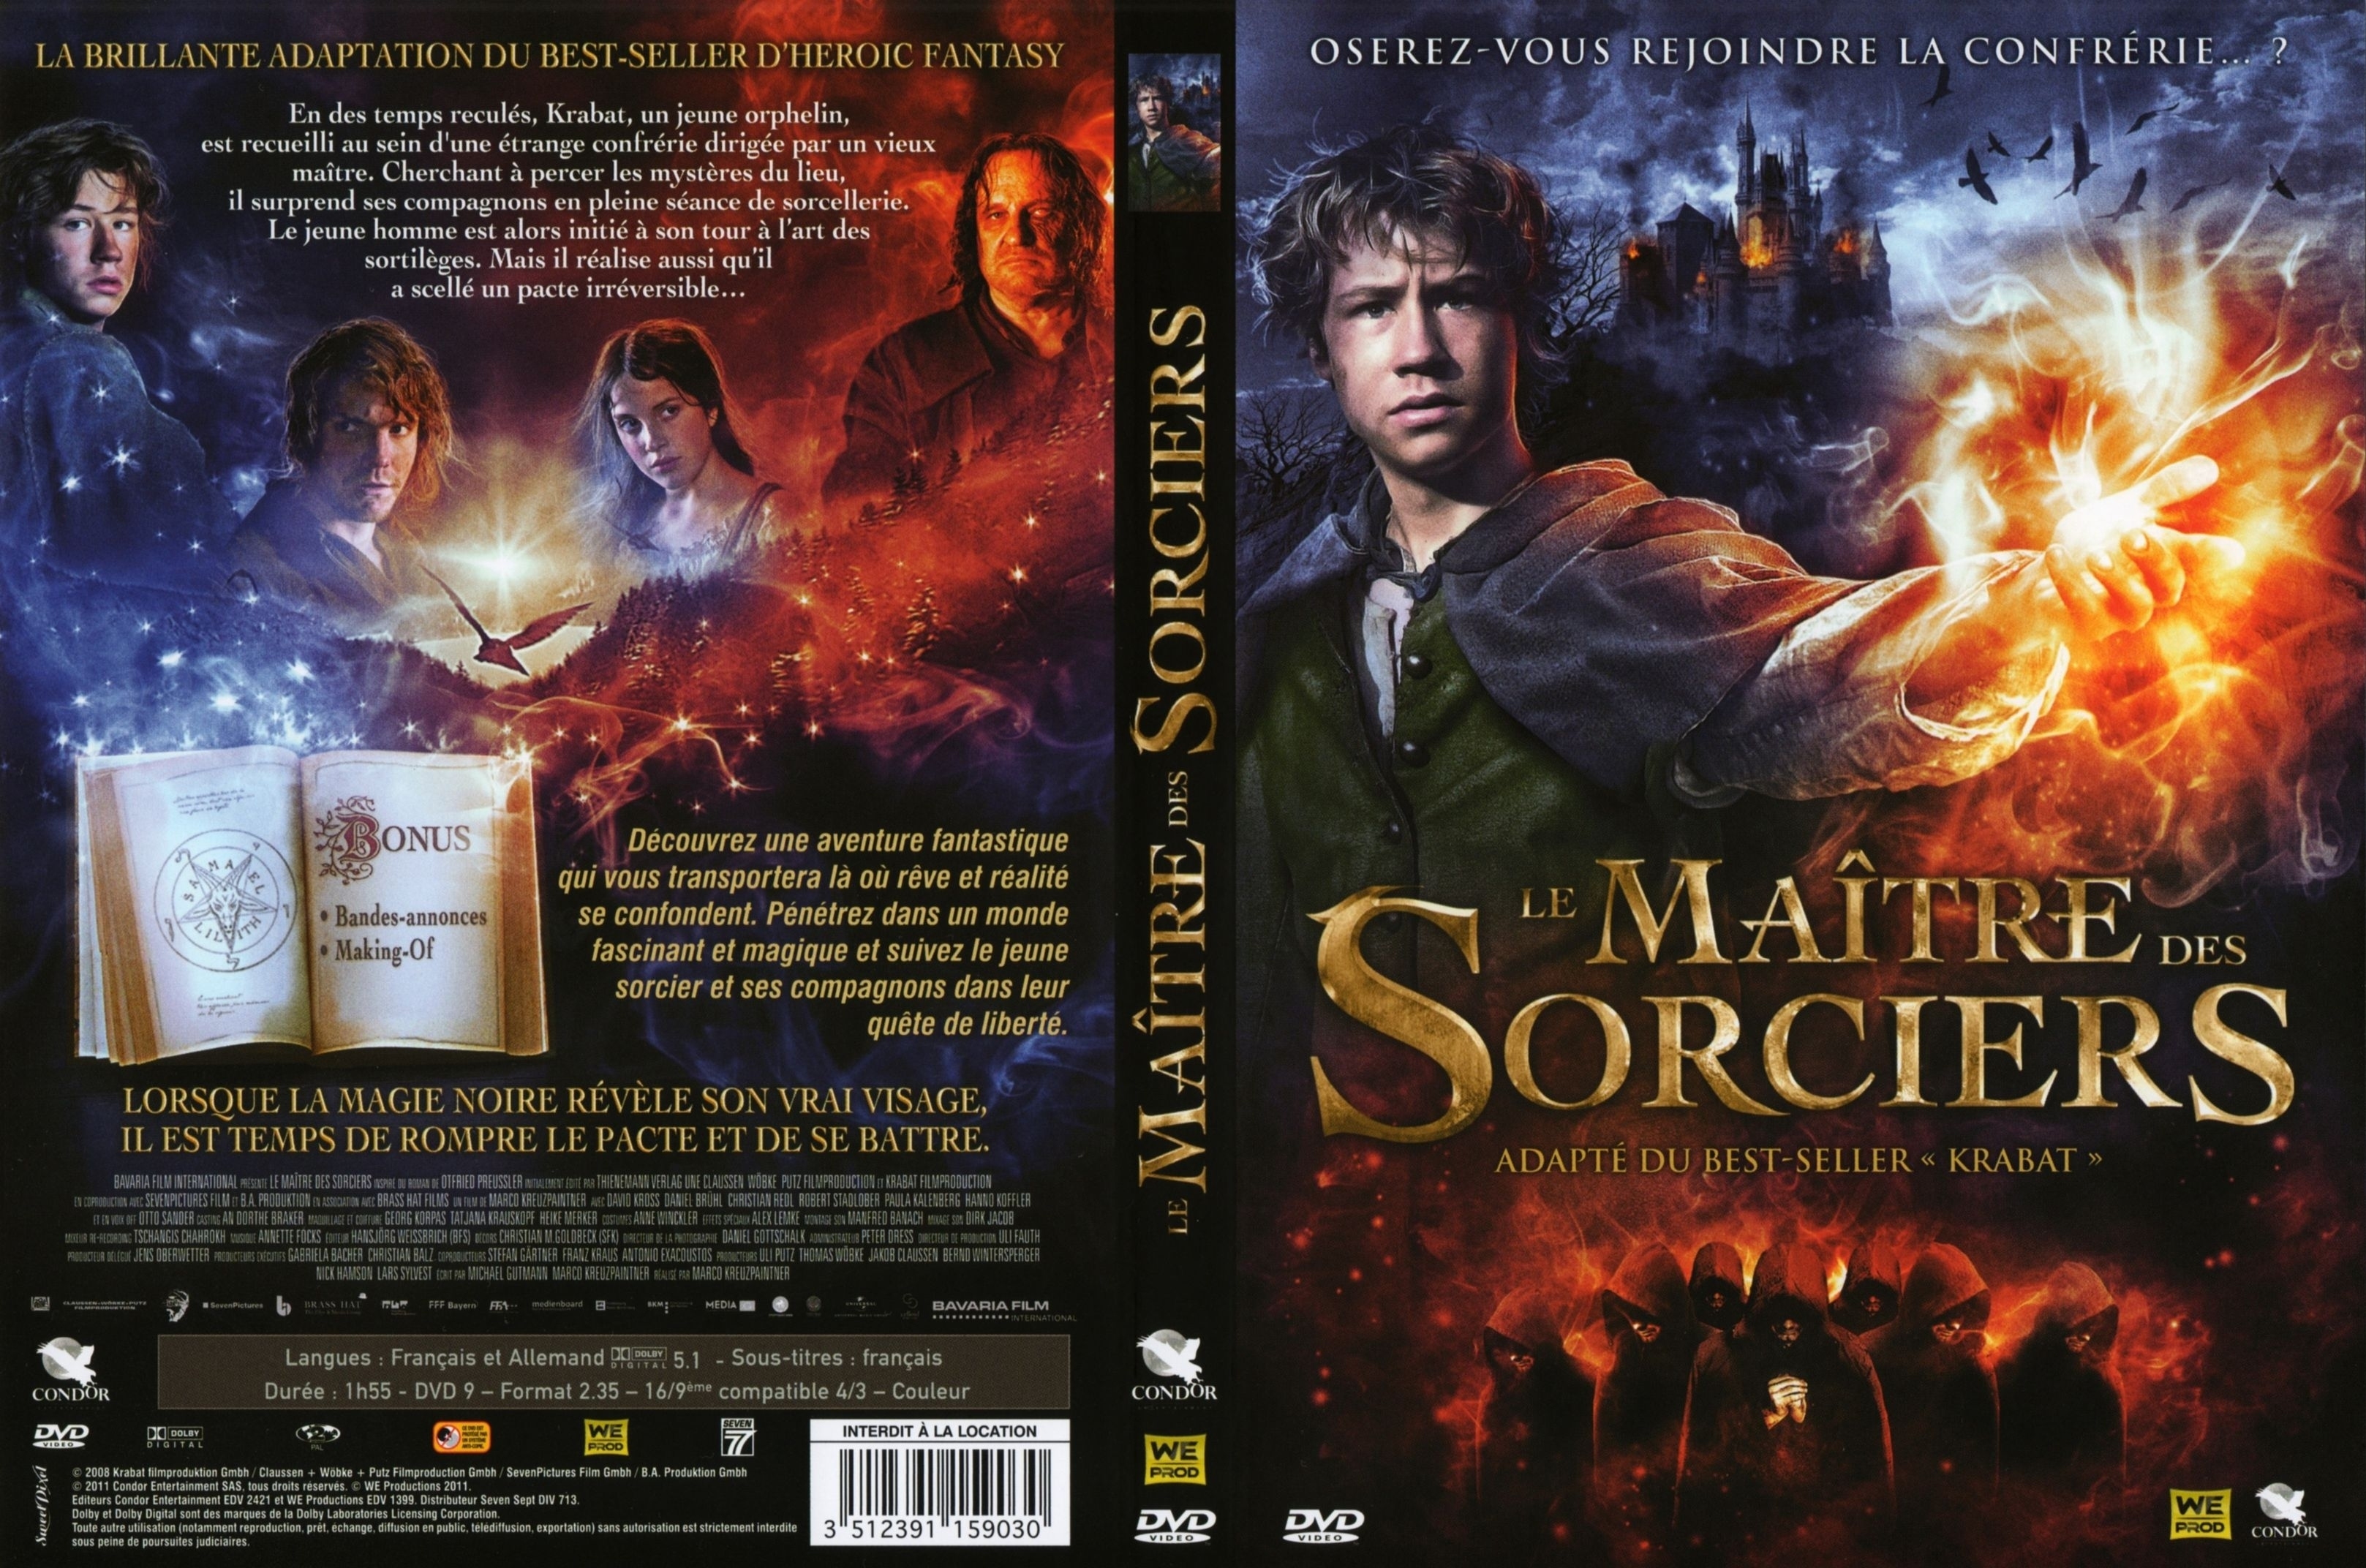 Jaquette DVD Le maitre des sorciers